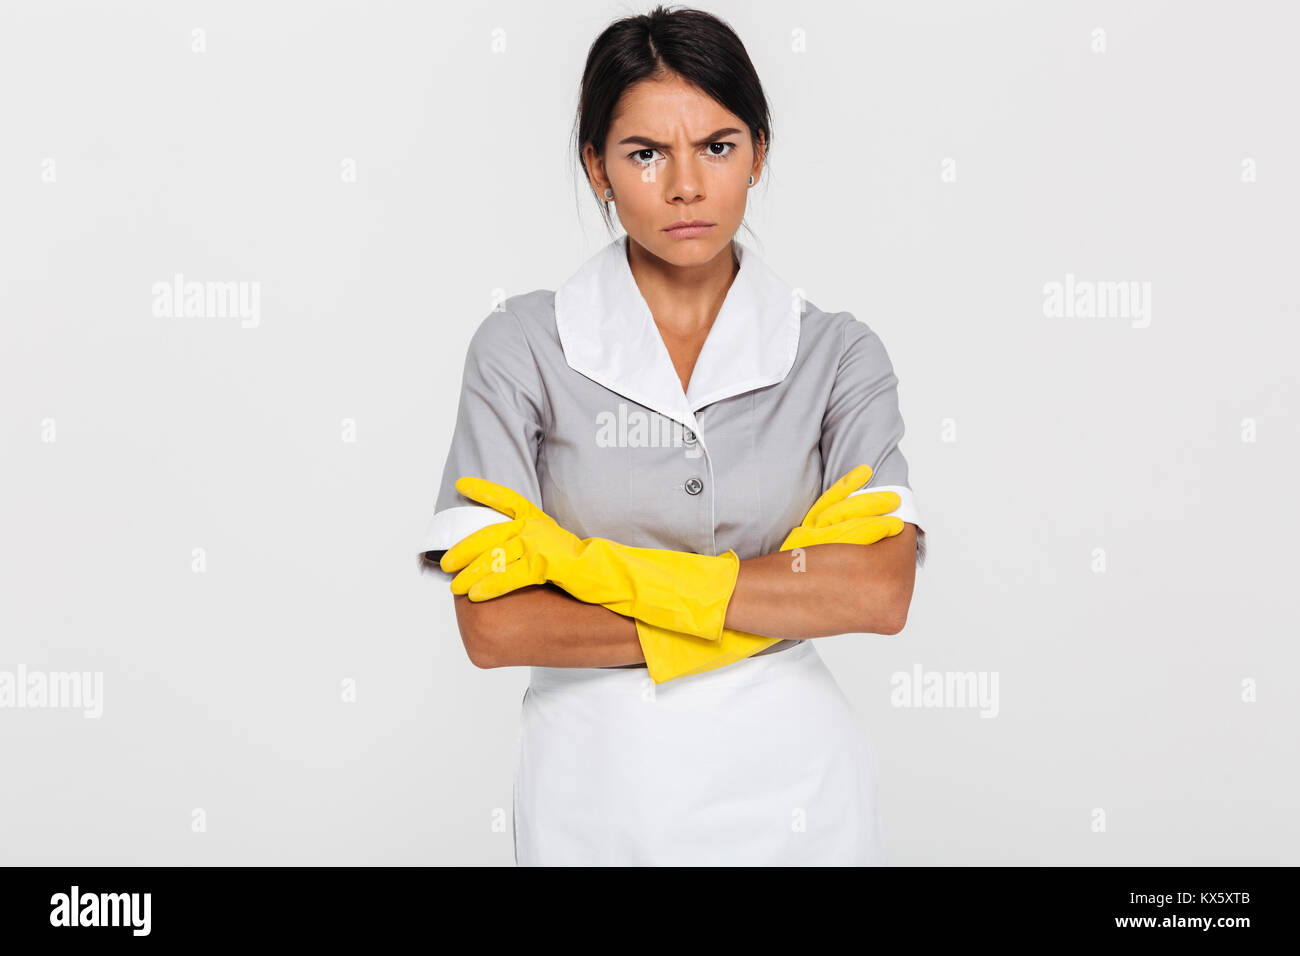 Portrait von grumpy attractve Maid in Uniform und gelbe Gummihandschuhe stehend mit gekreuzten Händen und Kamera, auf weißem Hintergrund Stockfoto